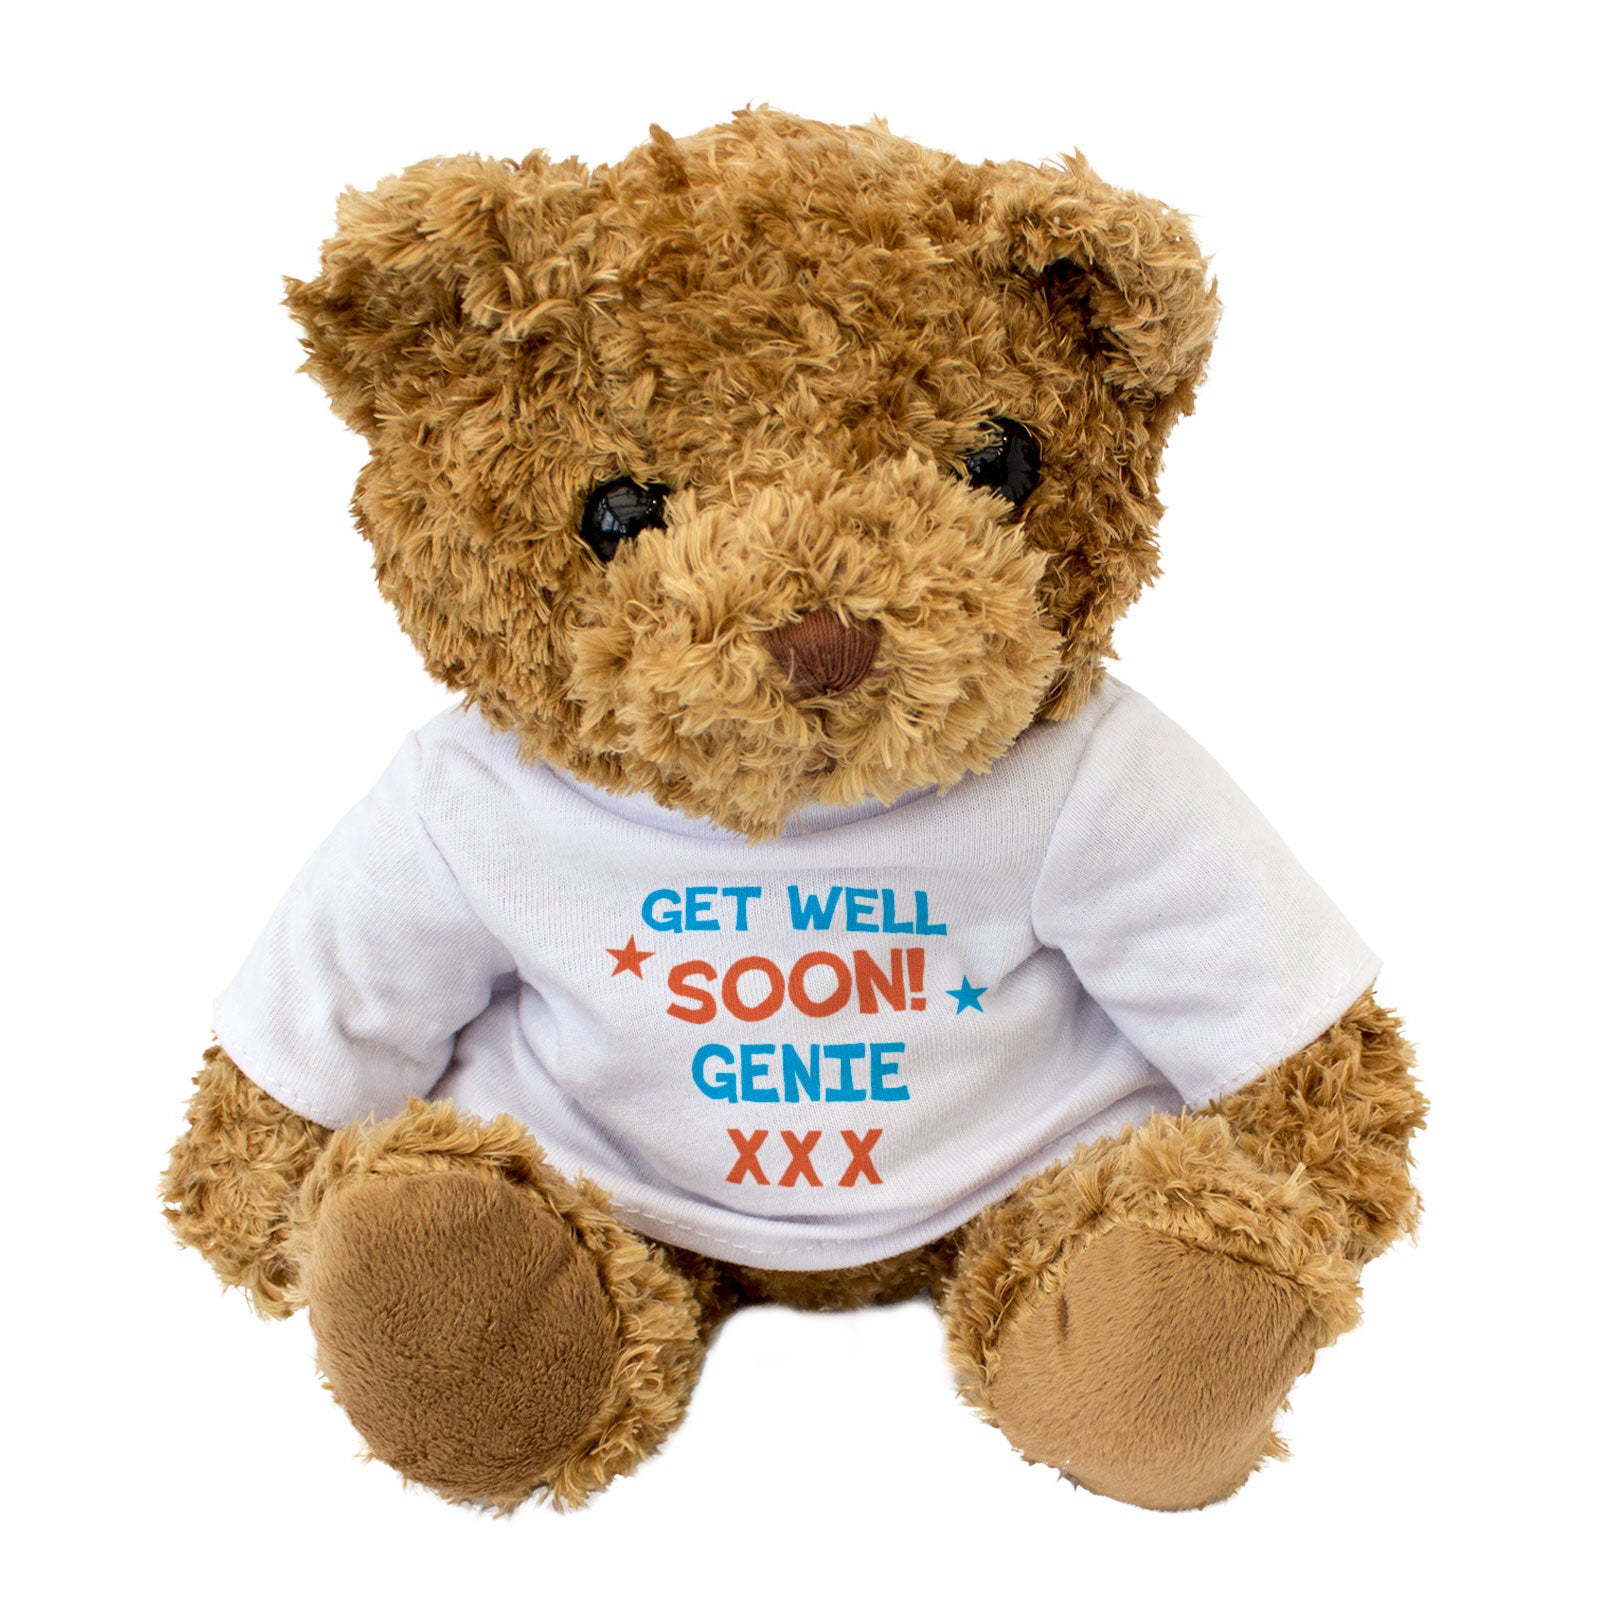 Get Well Soon Genie - Teddy Bear